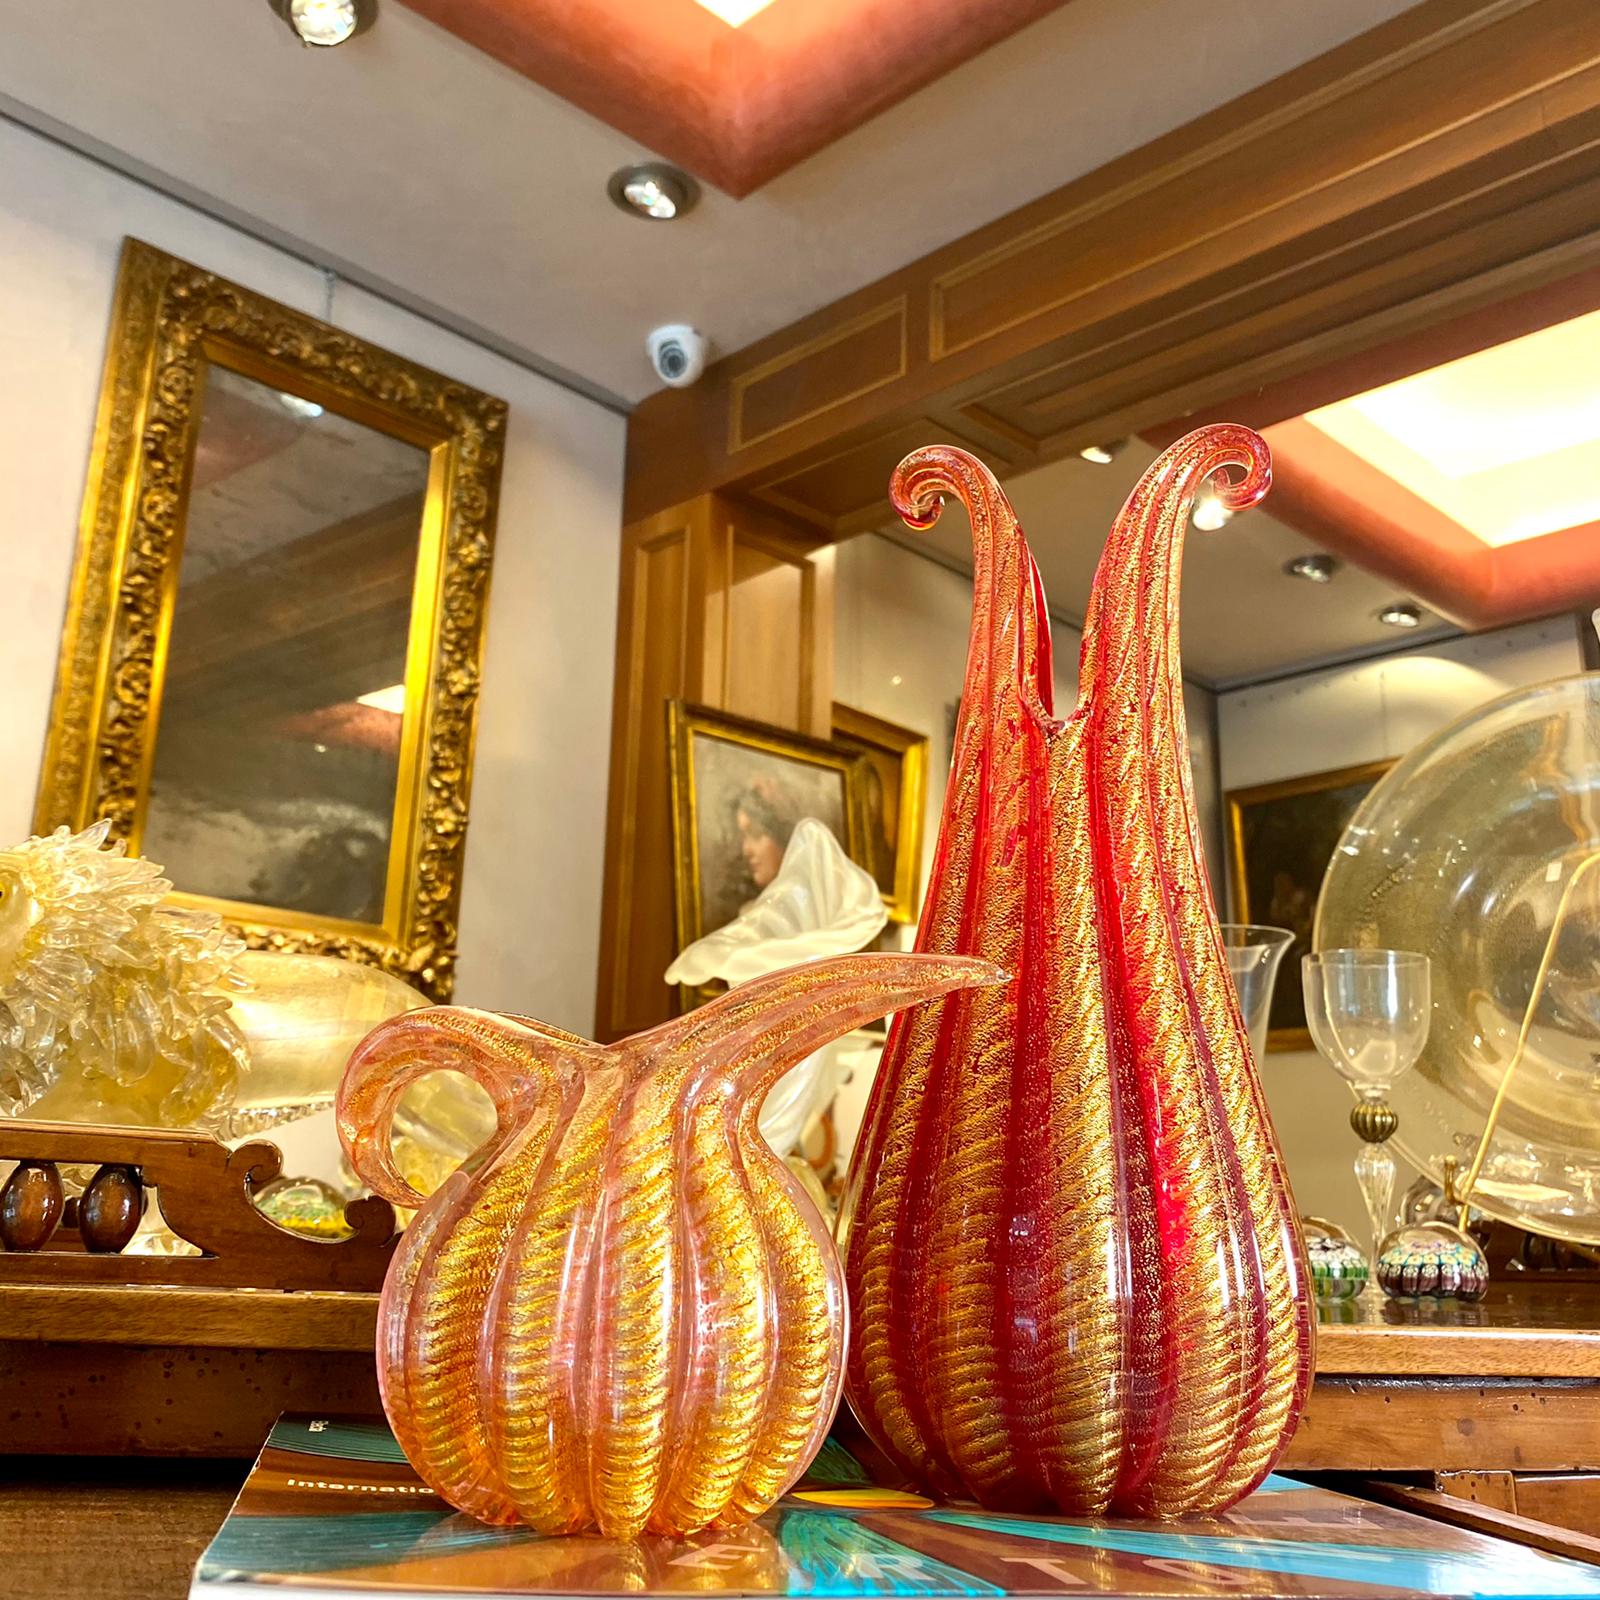 Vaso in vetro di Murano - Cordonati oro - Ercole Barovier anni '50 -  Vendita Vetri d'epoca